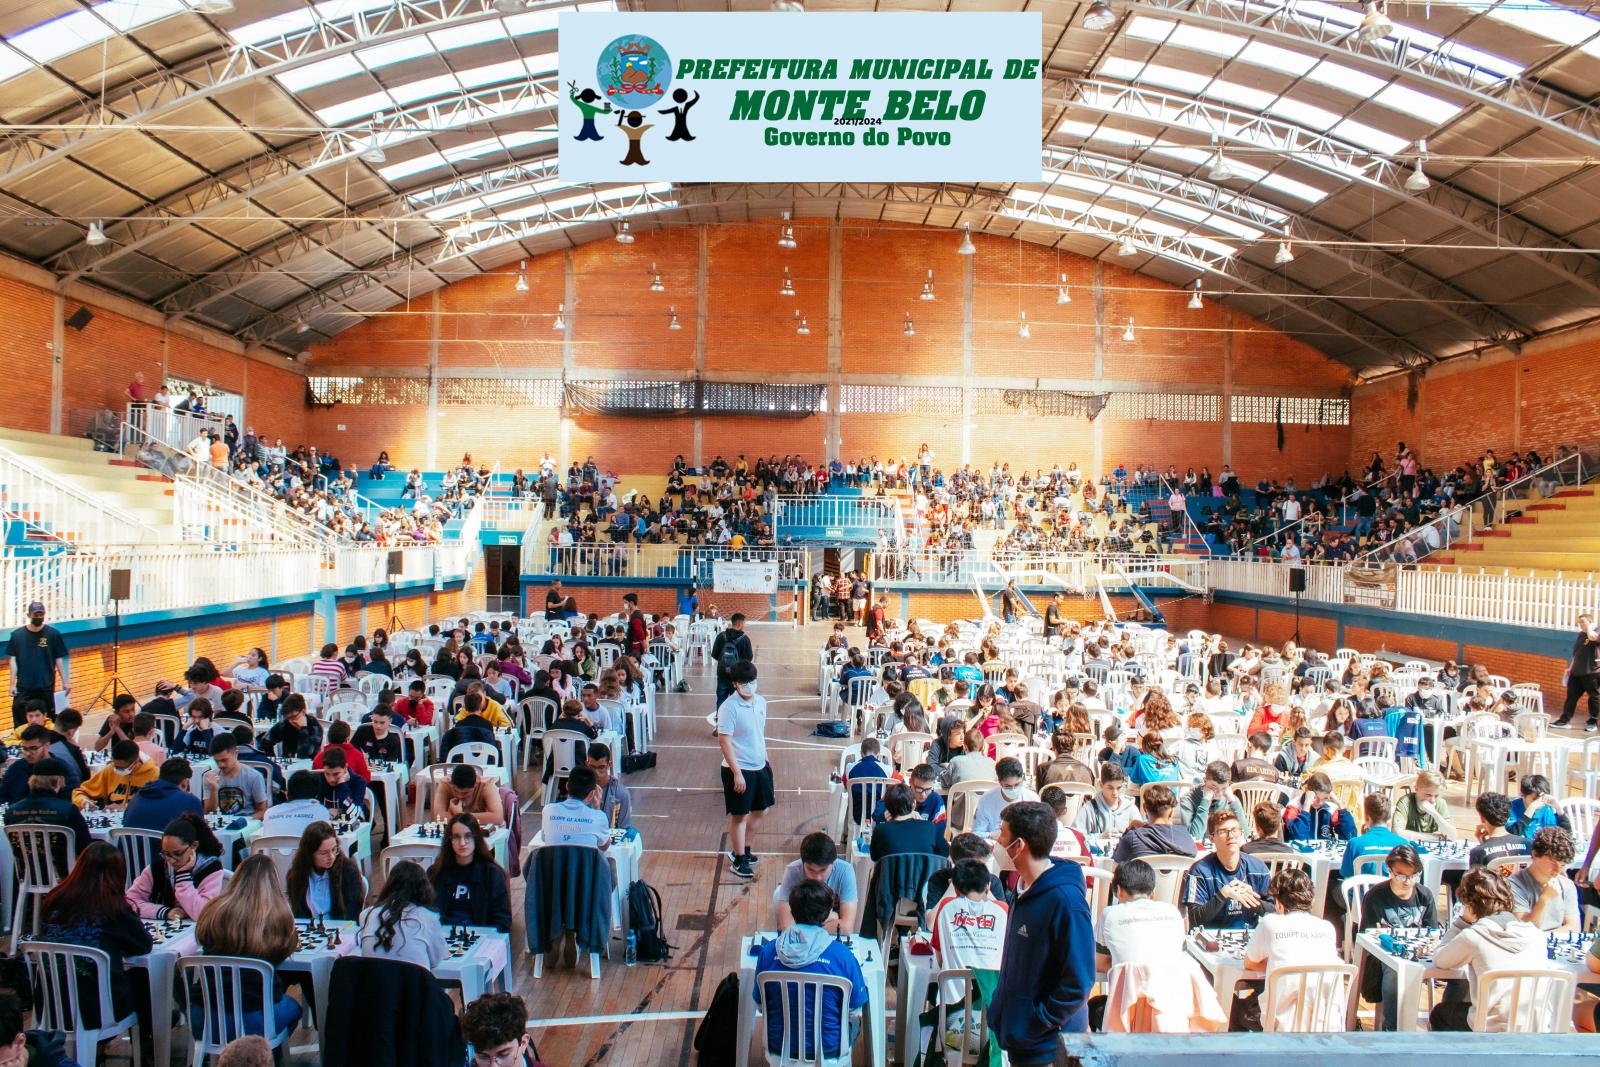 PROJETO DE XADREZ É DESENVOLVIDO EM ESCOLA MUNICIPAL DE MONTE BELO -  Prefeitura Municipal de Monte Belo - MG - Prefeitura de Monte Belo - MG